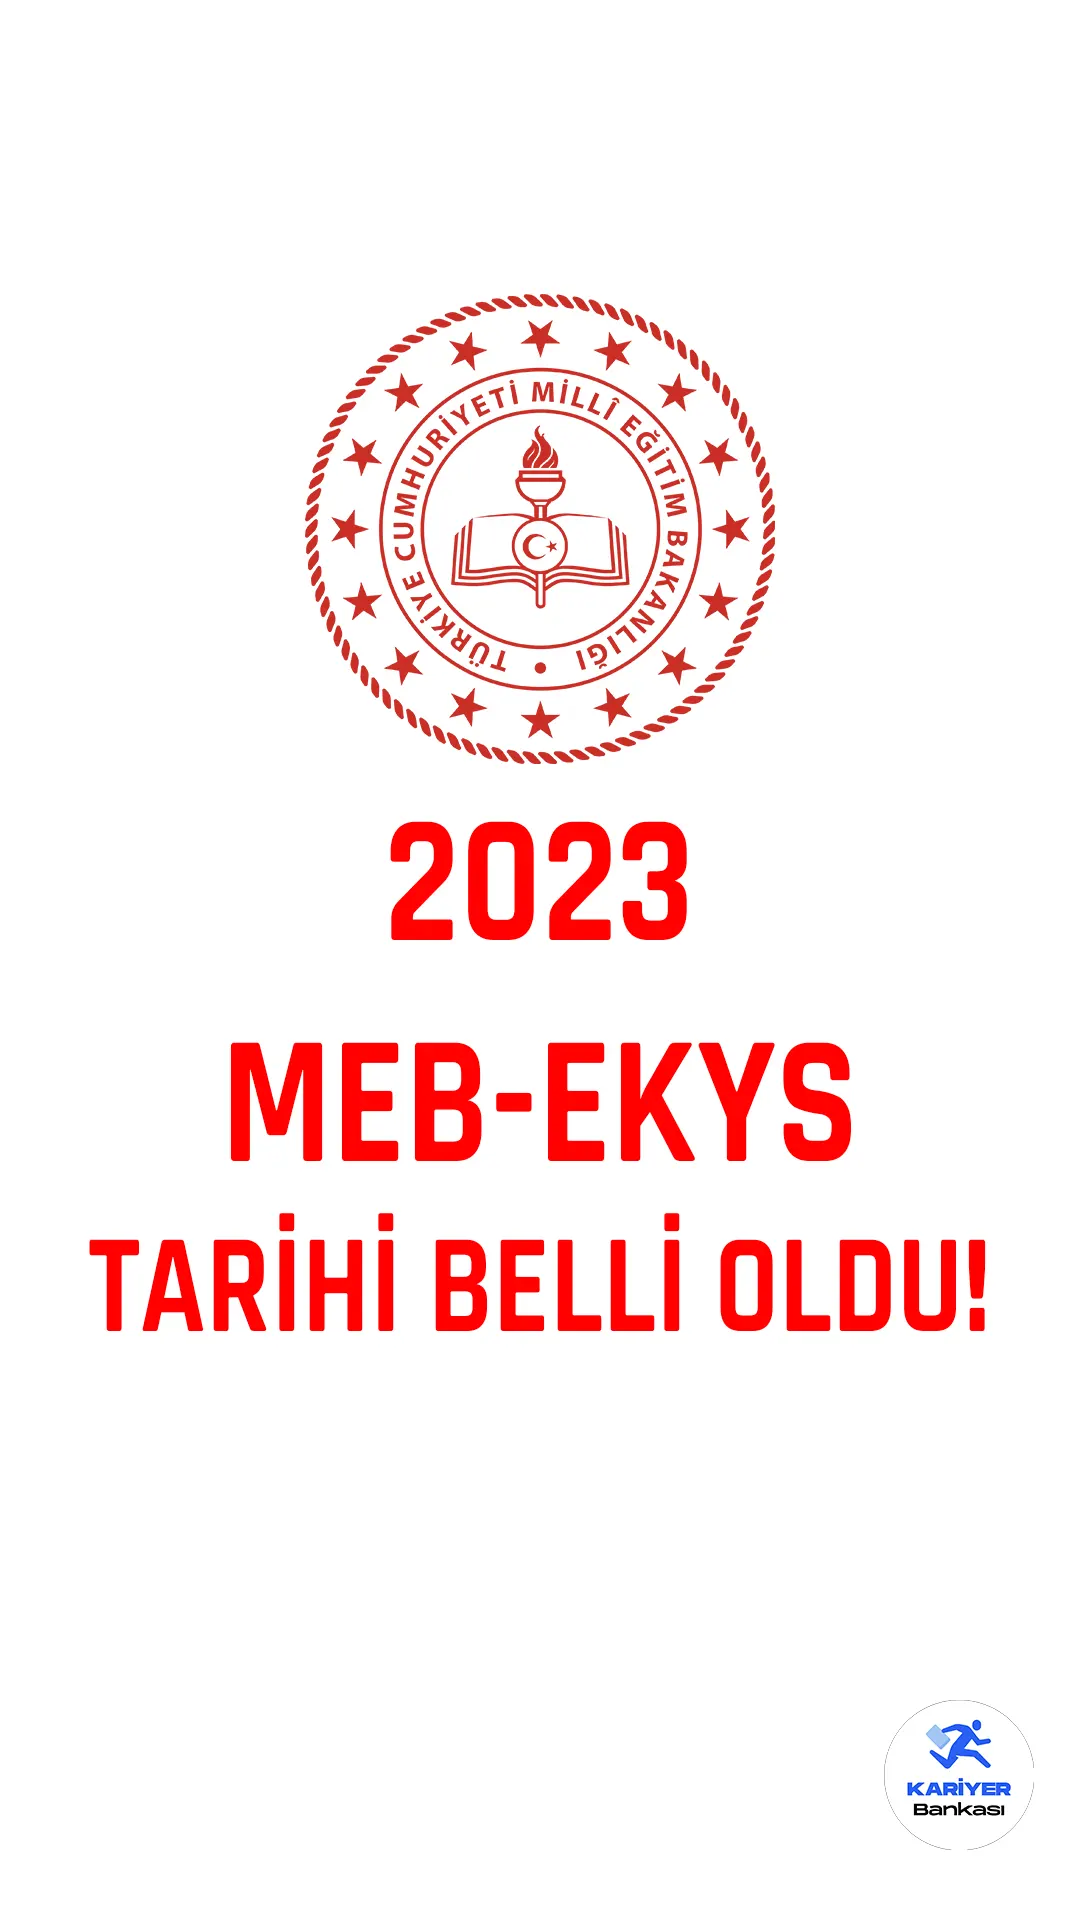 2023 MEB-EKYS tarihi belli oldu! Milli Eğitim Bakanlığı resmi sayfasından yayımlanan duyuruda, 2023 Milli Eğitim Bakanlığı Eğitim Kurumlarınca Yönetici Seçme Sınavı'nın (MEB-EKYS) 21 Mayıs 2023 tarihinde yapılacağı aktarıldı. Kahramanmaraş ve Malatya'da 2023-MEB-EKYS gerçekleştirilmeyeceği için daha önce bu illeri tercih eden adayların belirtilen sürede sınav merkezi tercihini güncellemeleri gerektiği kaydedildi.